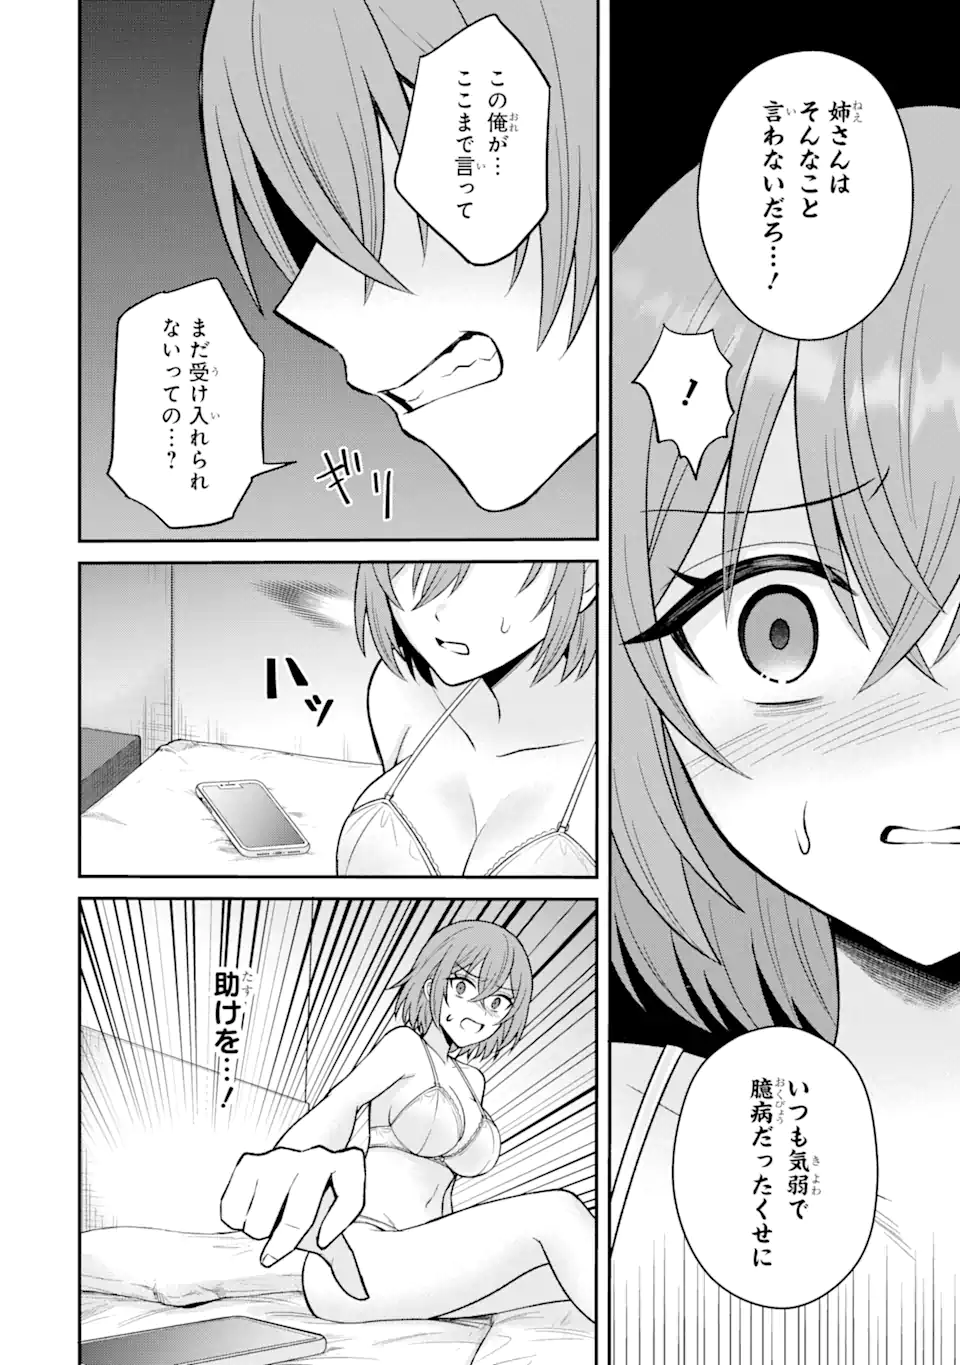 Netorare Manga no Kuzu Otoko ni Tensei Shita Hazu ga Heroine ga Yottekuru Ken - Chapter 14.1 - Page 10